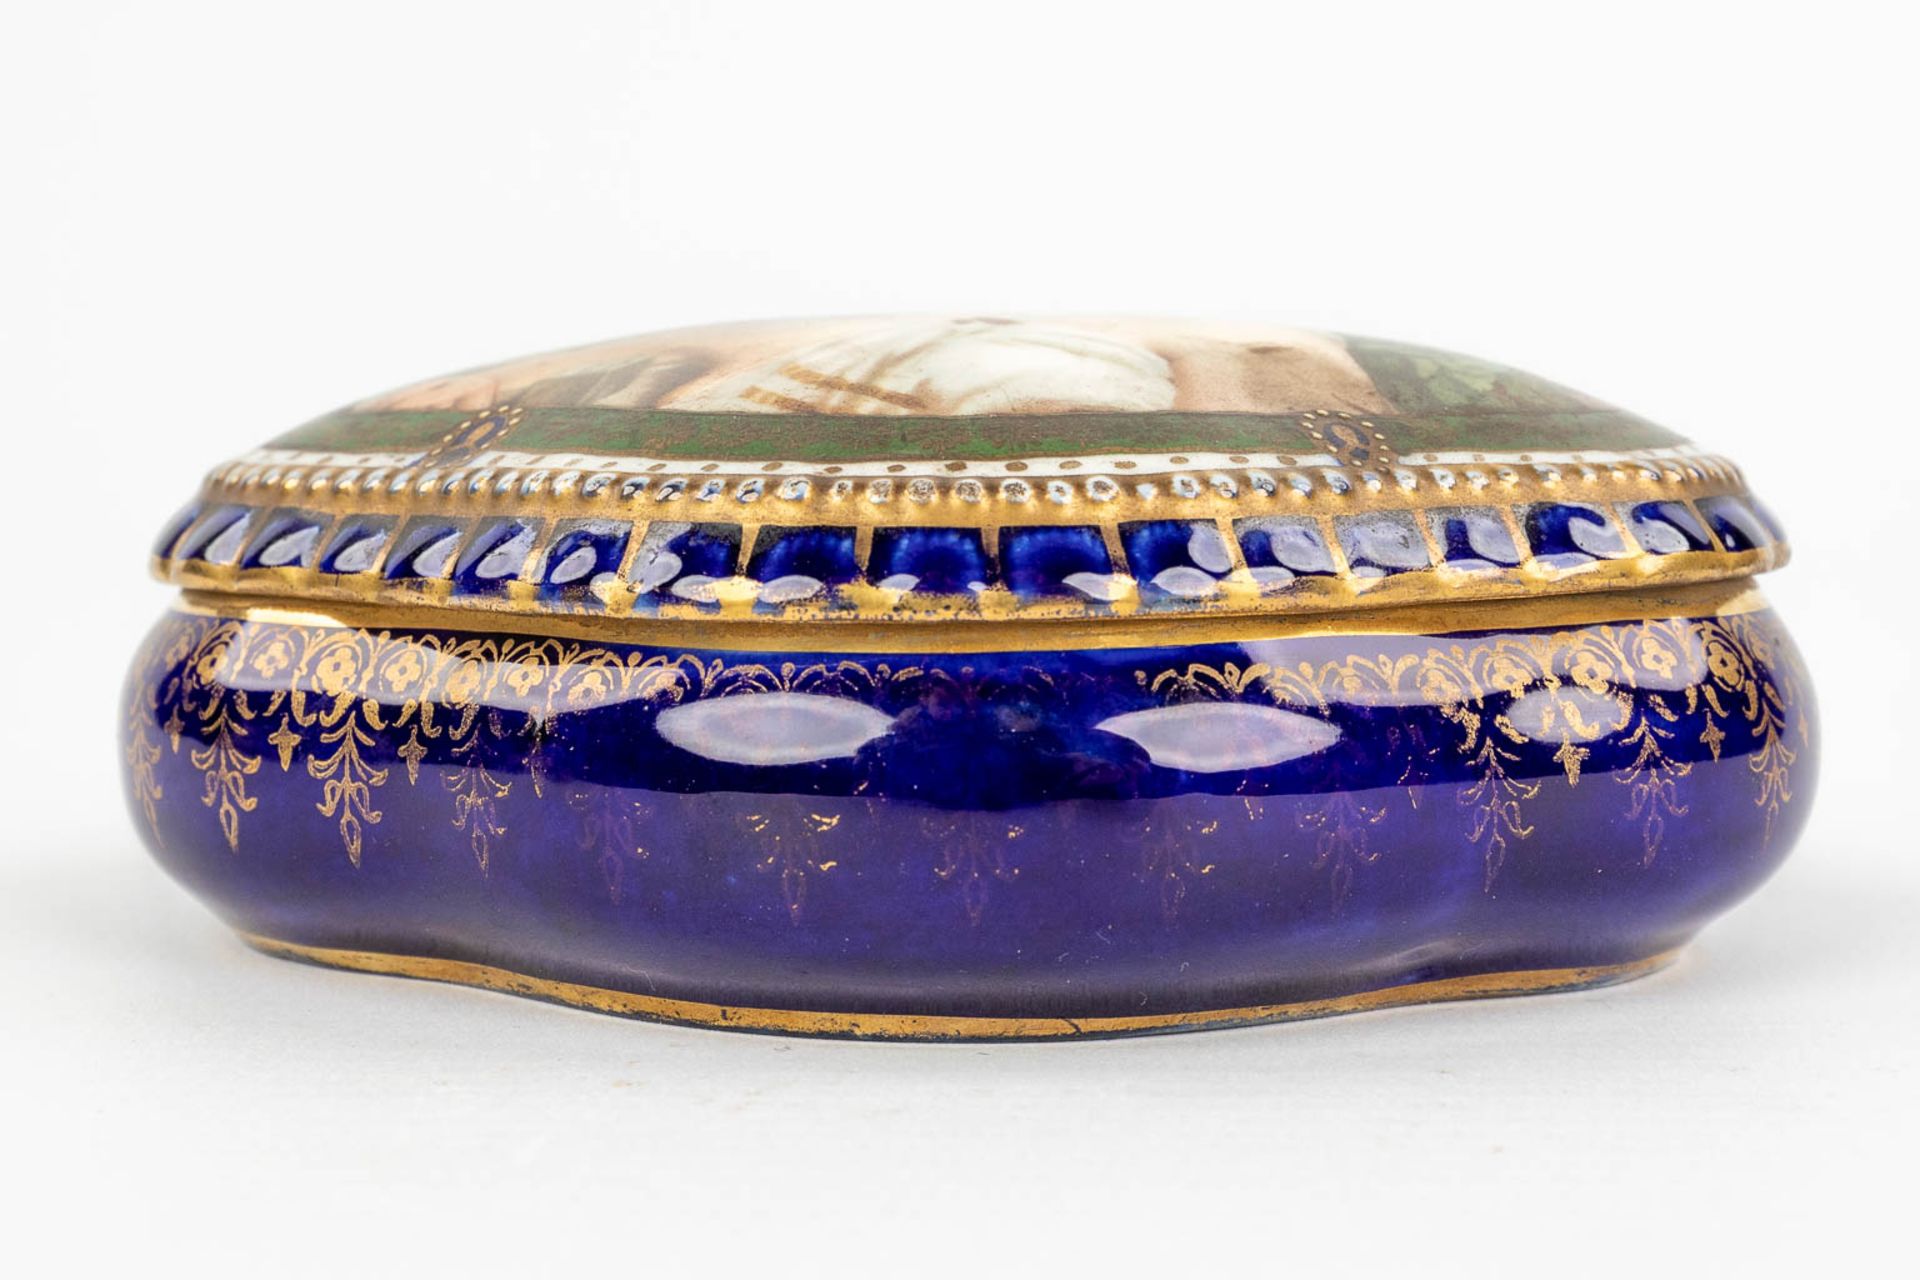 Sitzendorf & 'Royal Vienna' a set of 2 porcelain items. (L:12 x W:20 x H:23 cm) - Image 12 of 22